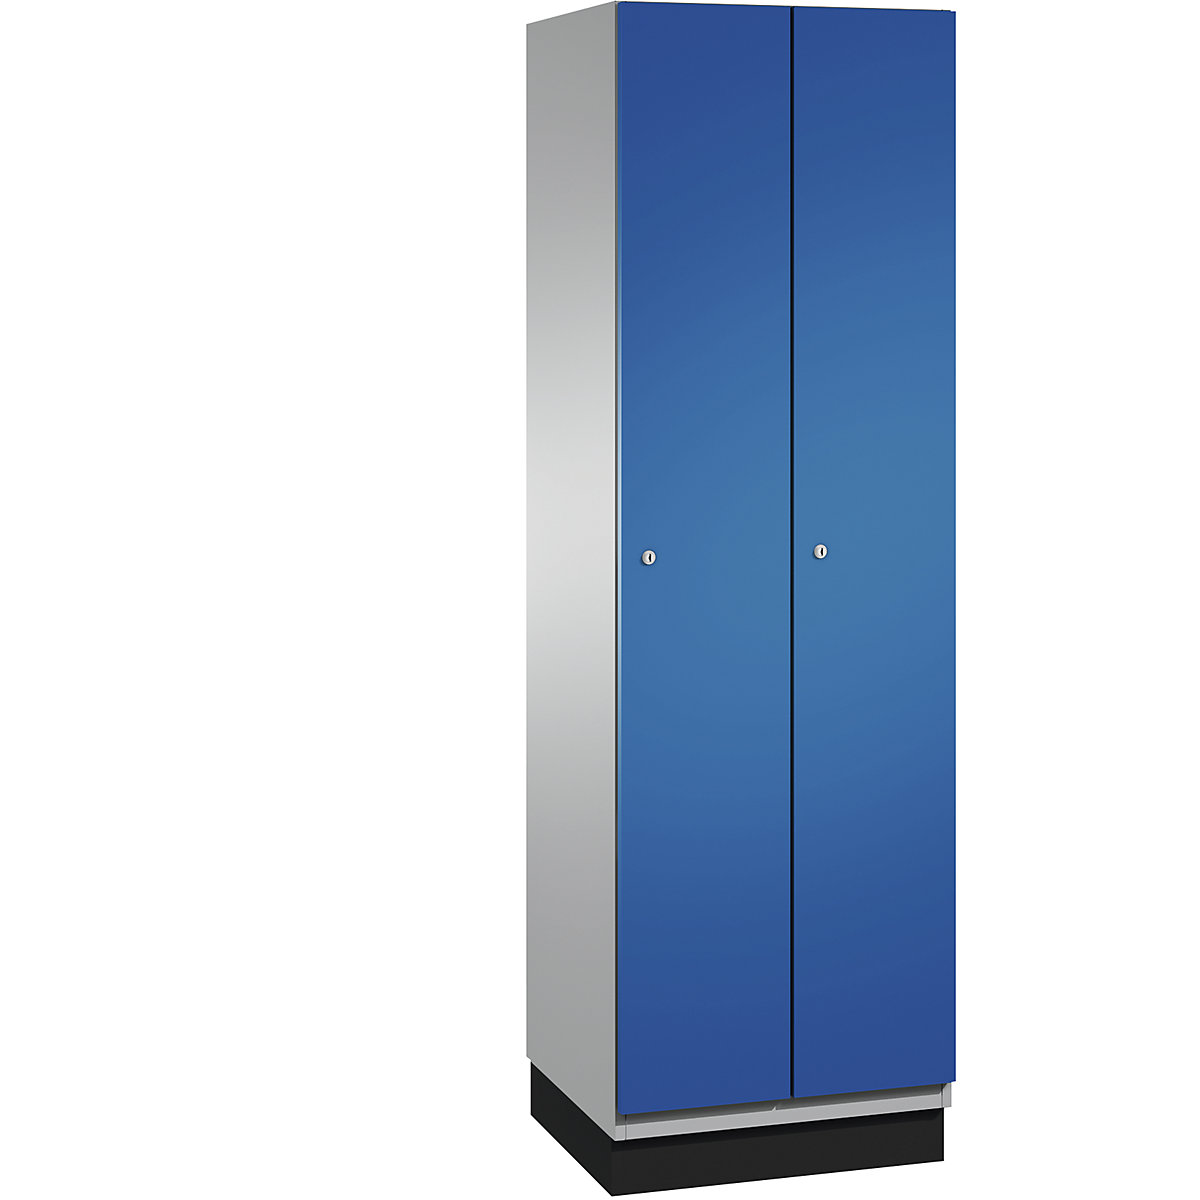 CAMBIO cloakroom locker with sheet steel doors – C+P